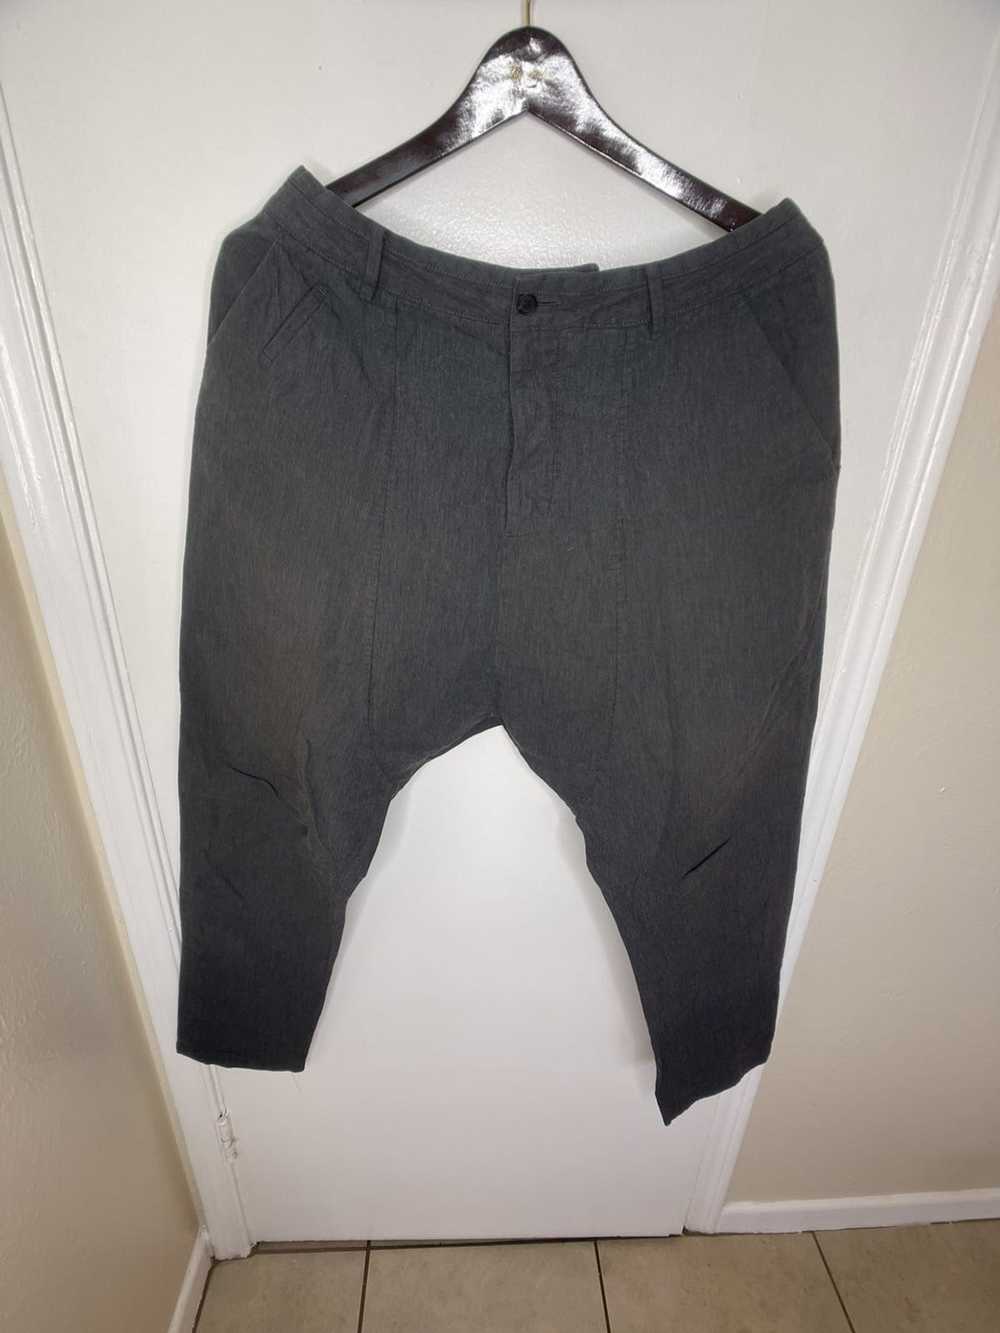 Allsaints Harem cut trousers (pants) - image 1